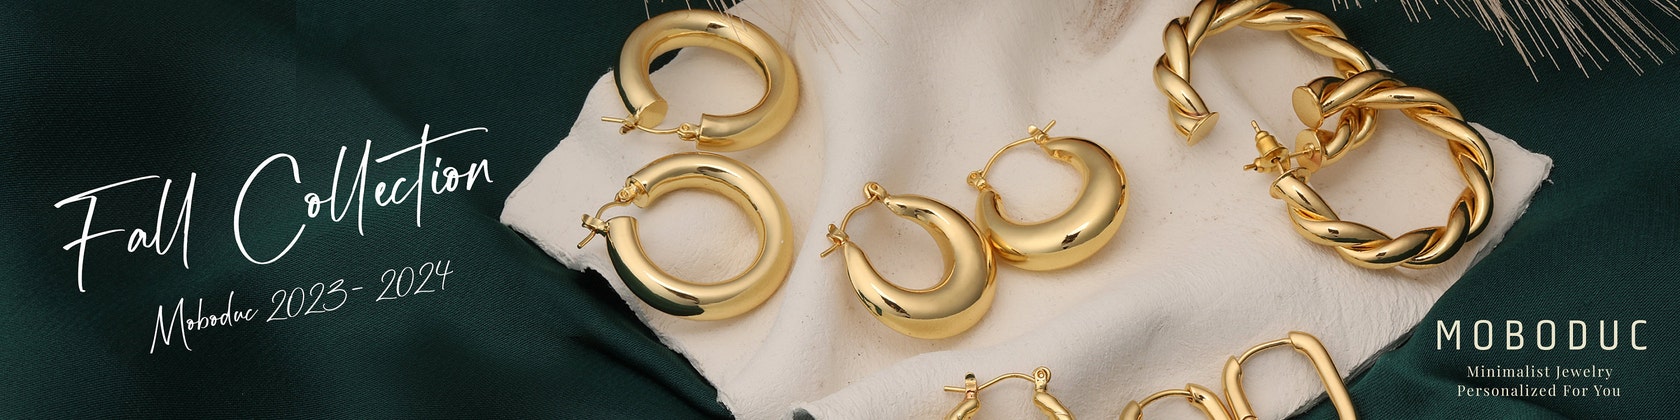 chanel vintage hoop earrings